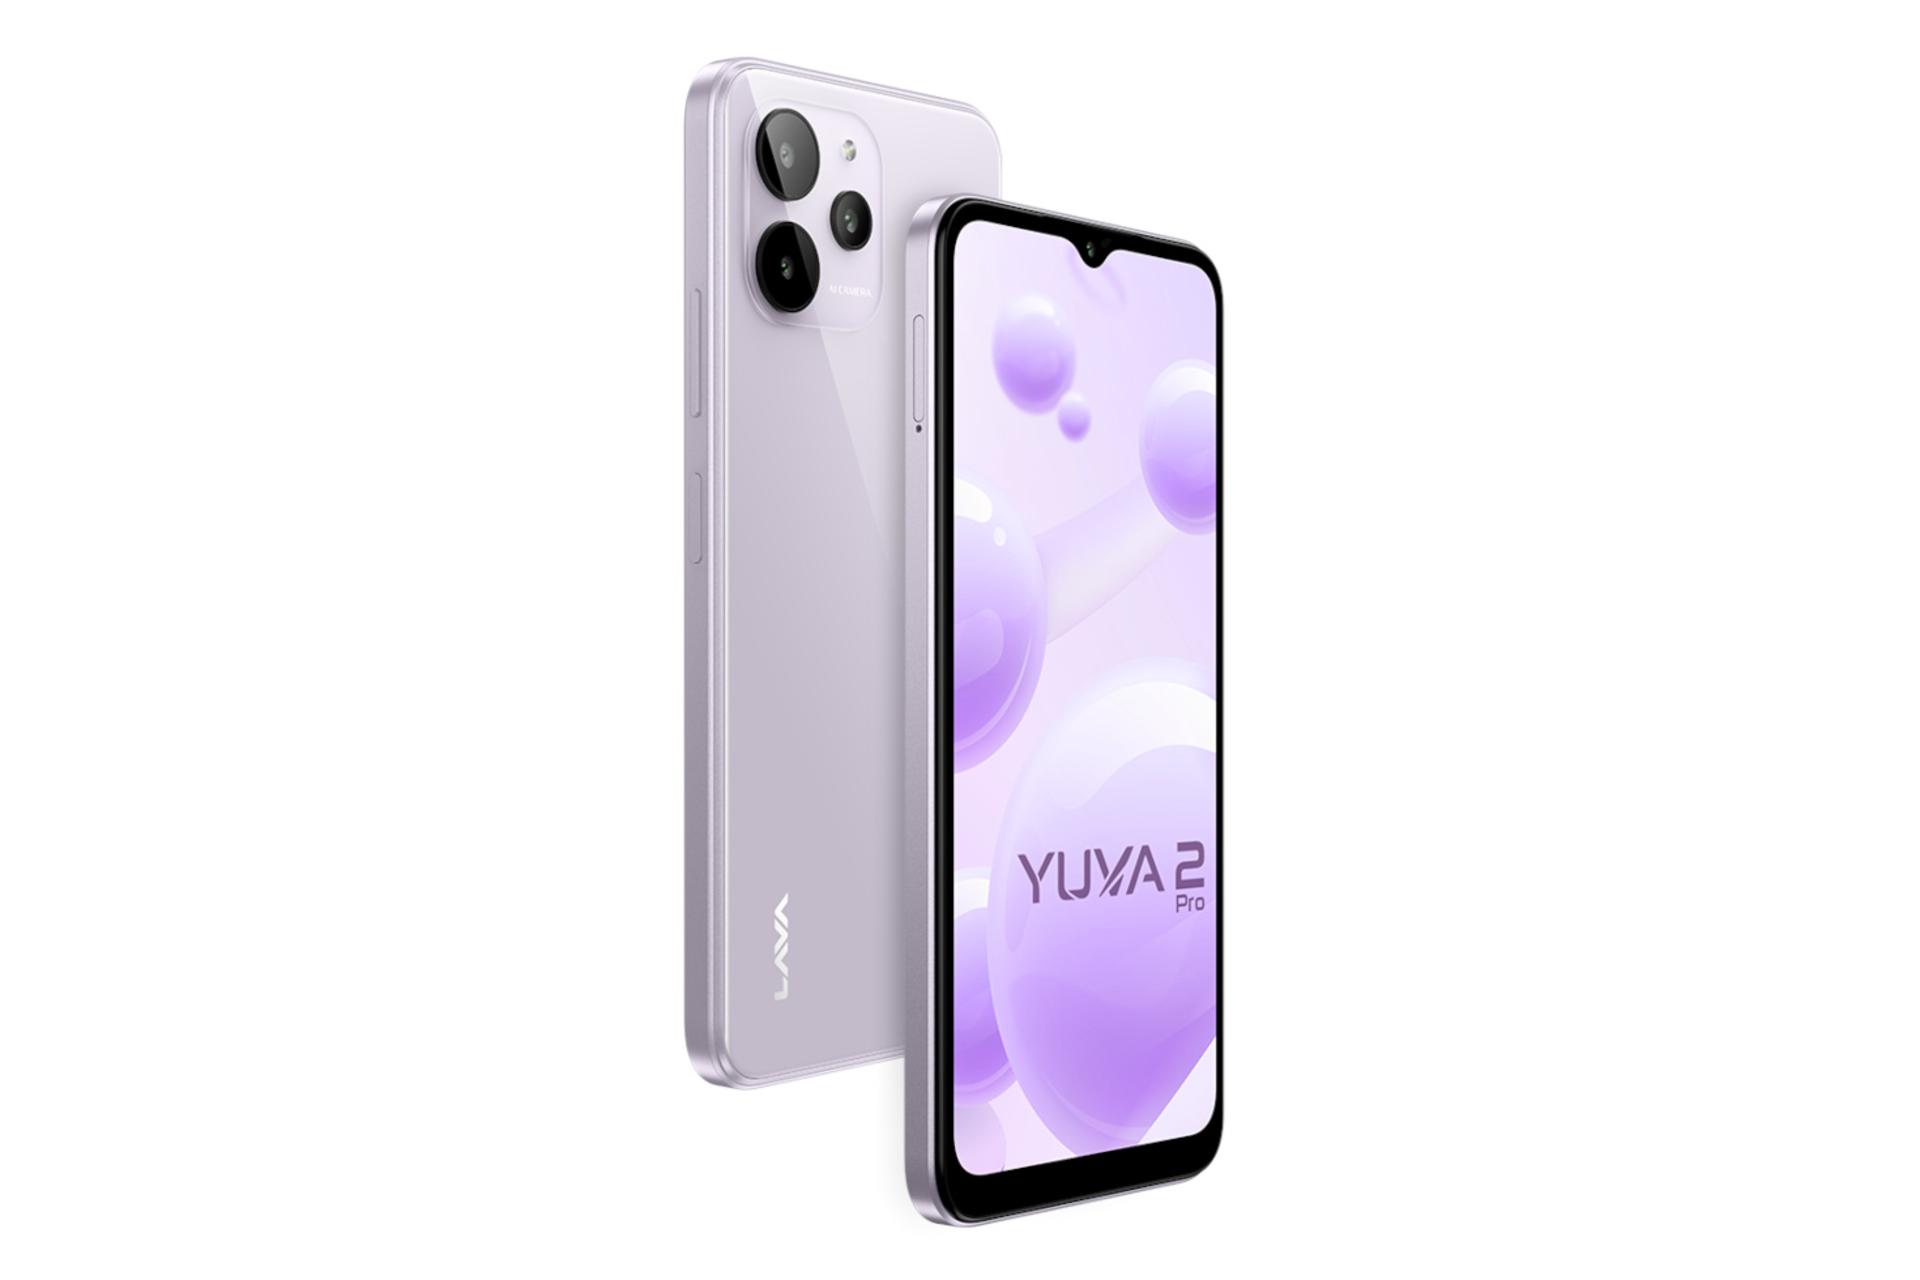 نمای جانبی گوشی موبایل Yuva 2 پرو لاوا / Lava Yuva 2 Pro بنفش روشن